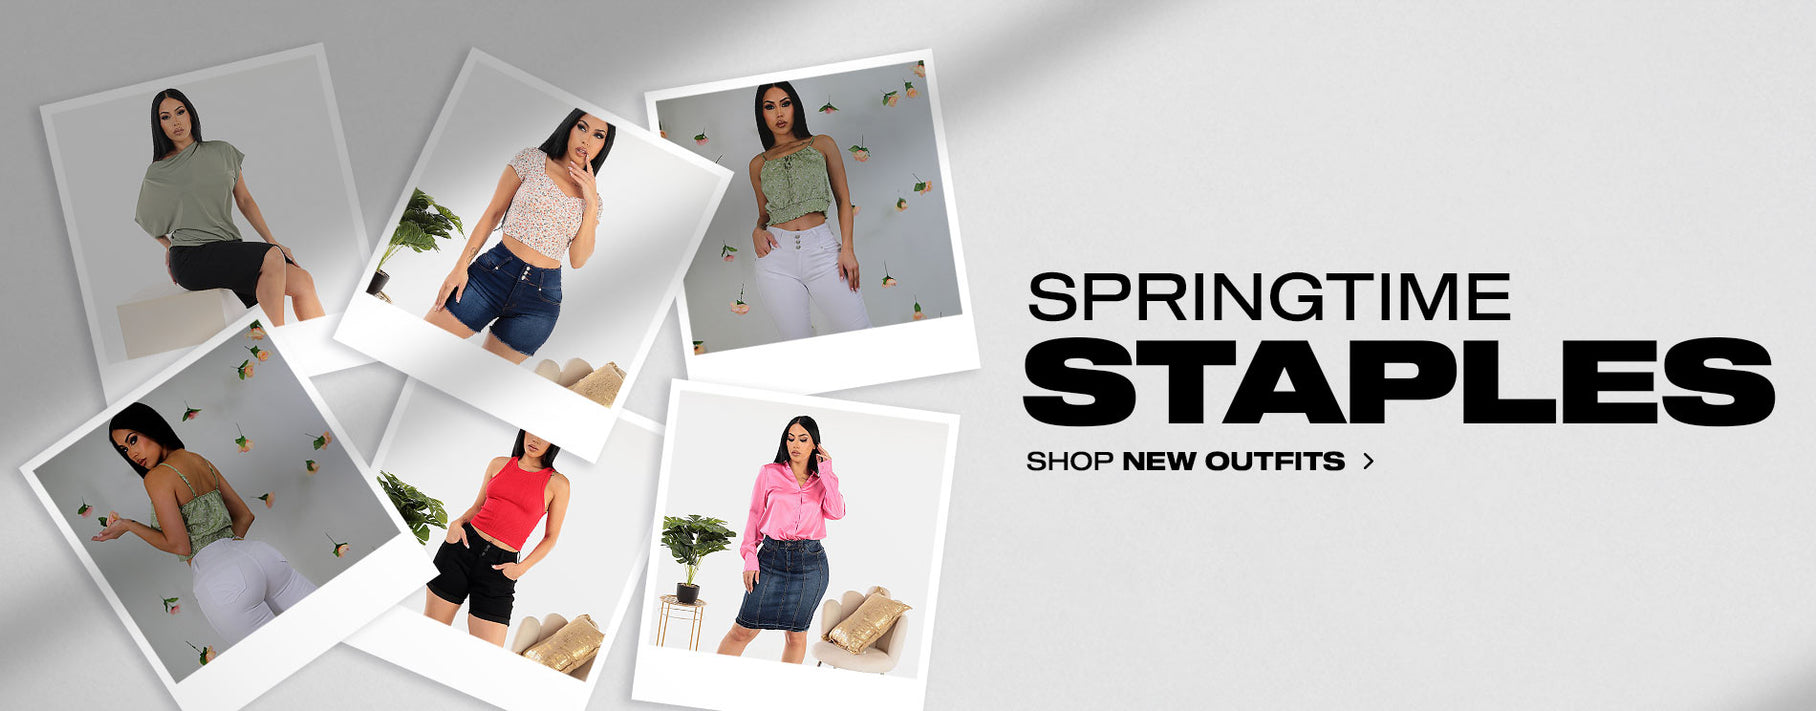 Springtime Staples: Shop New Outfits